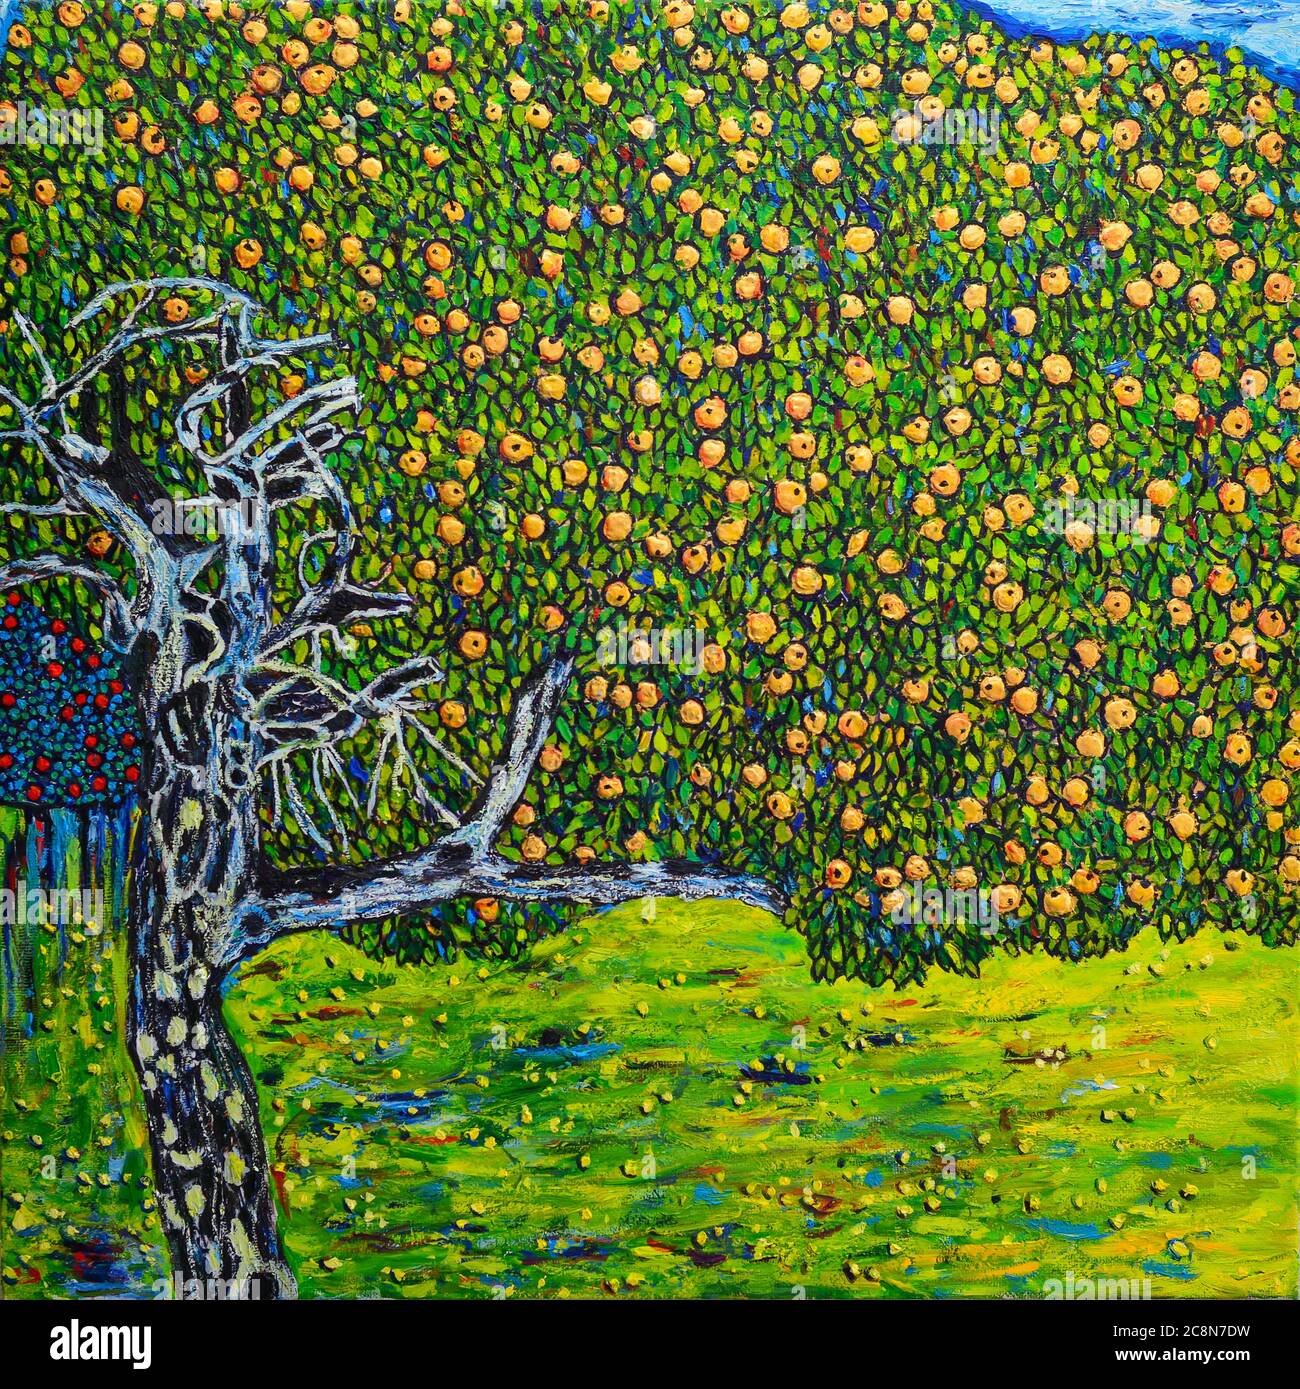 Schöne Ölgemälde Apfelbaum. Die freie Kopie basiert auf einer Fotowiedergabe eines wunderbaren Gemäldes von Gustav Klimt -der Goldene Apfelbaum- das war Stockfoto